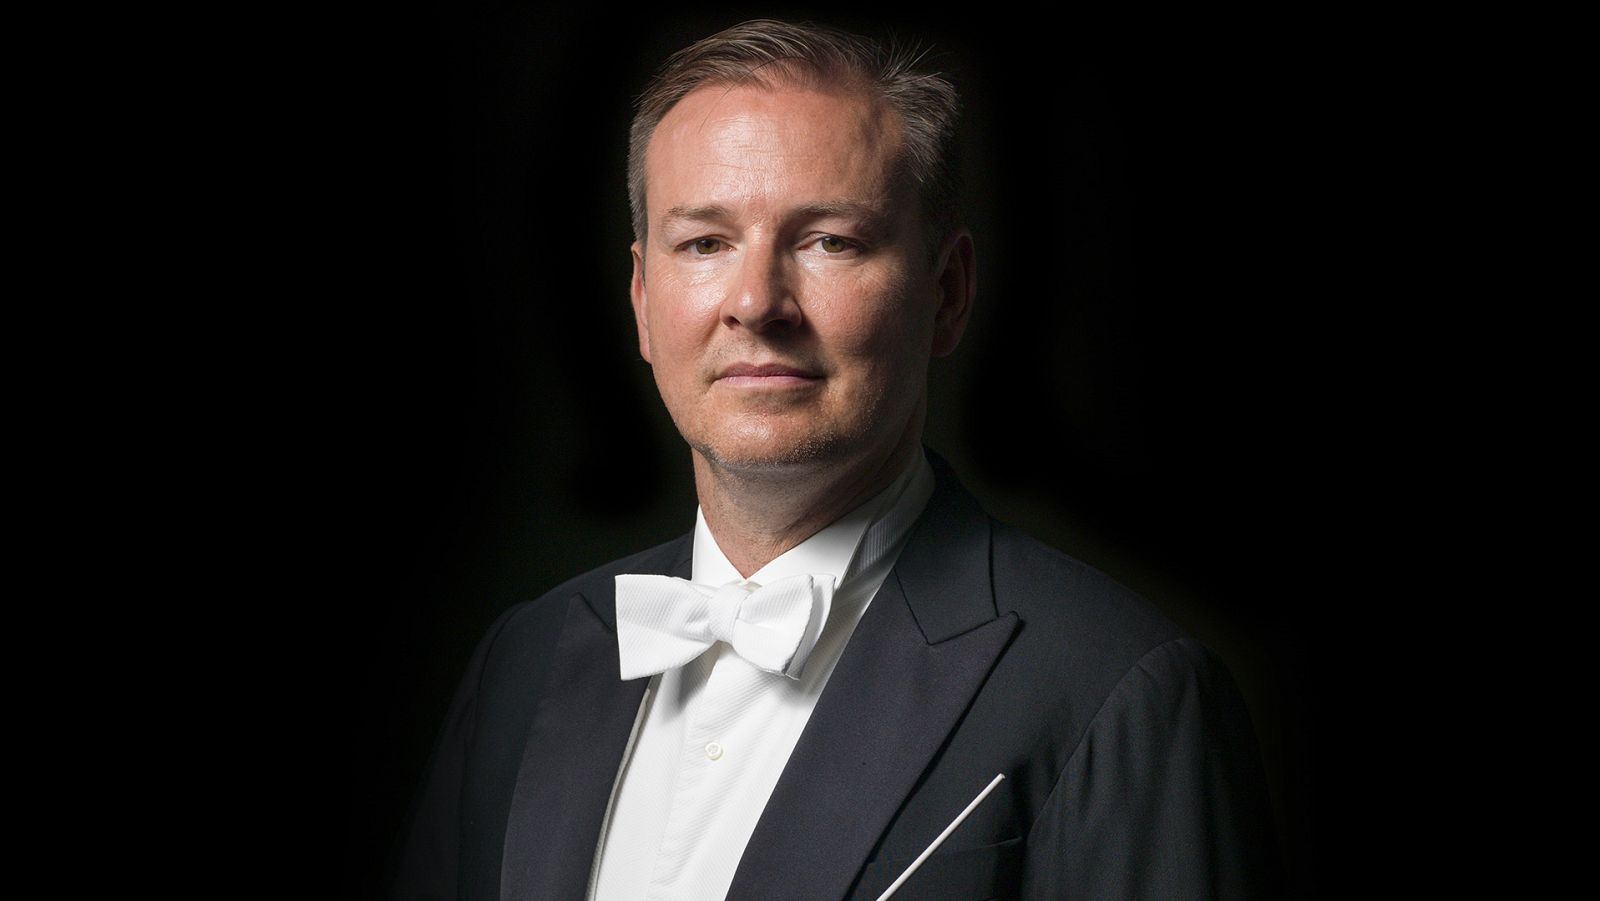 Erik Nielsen